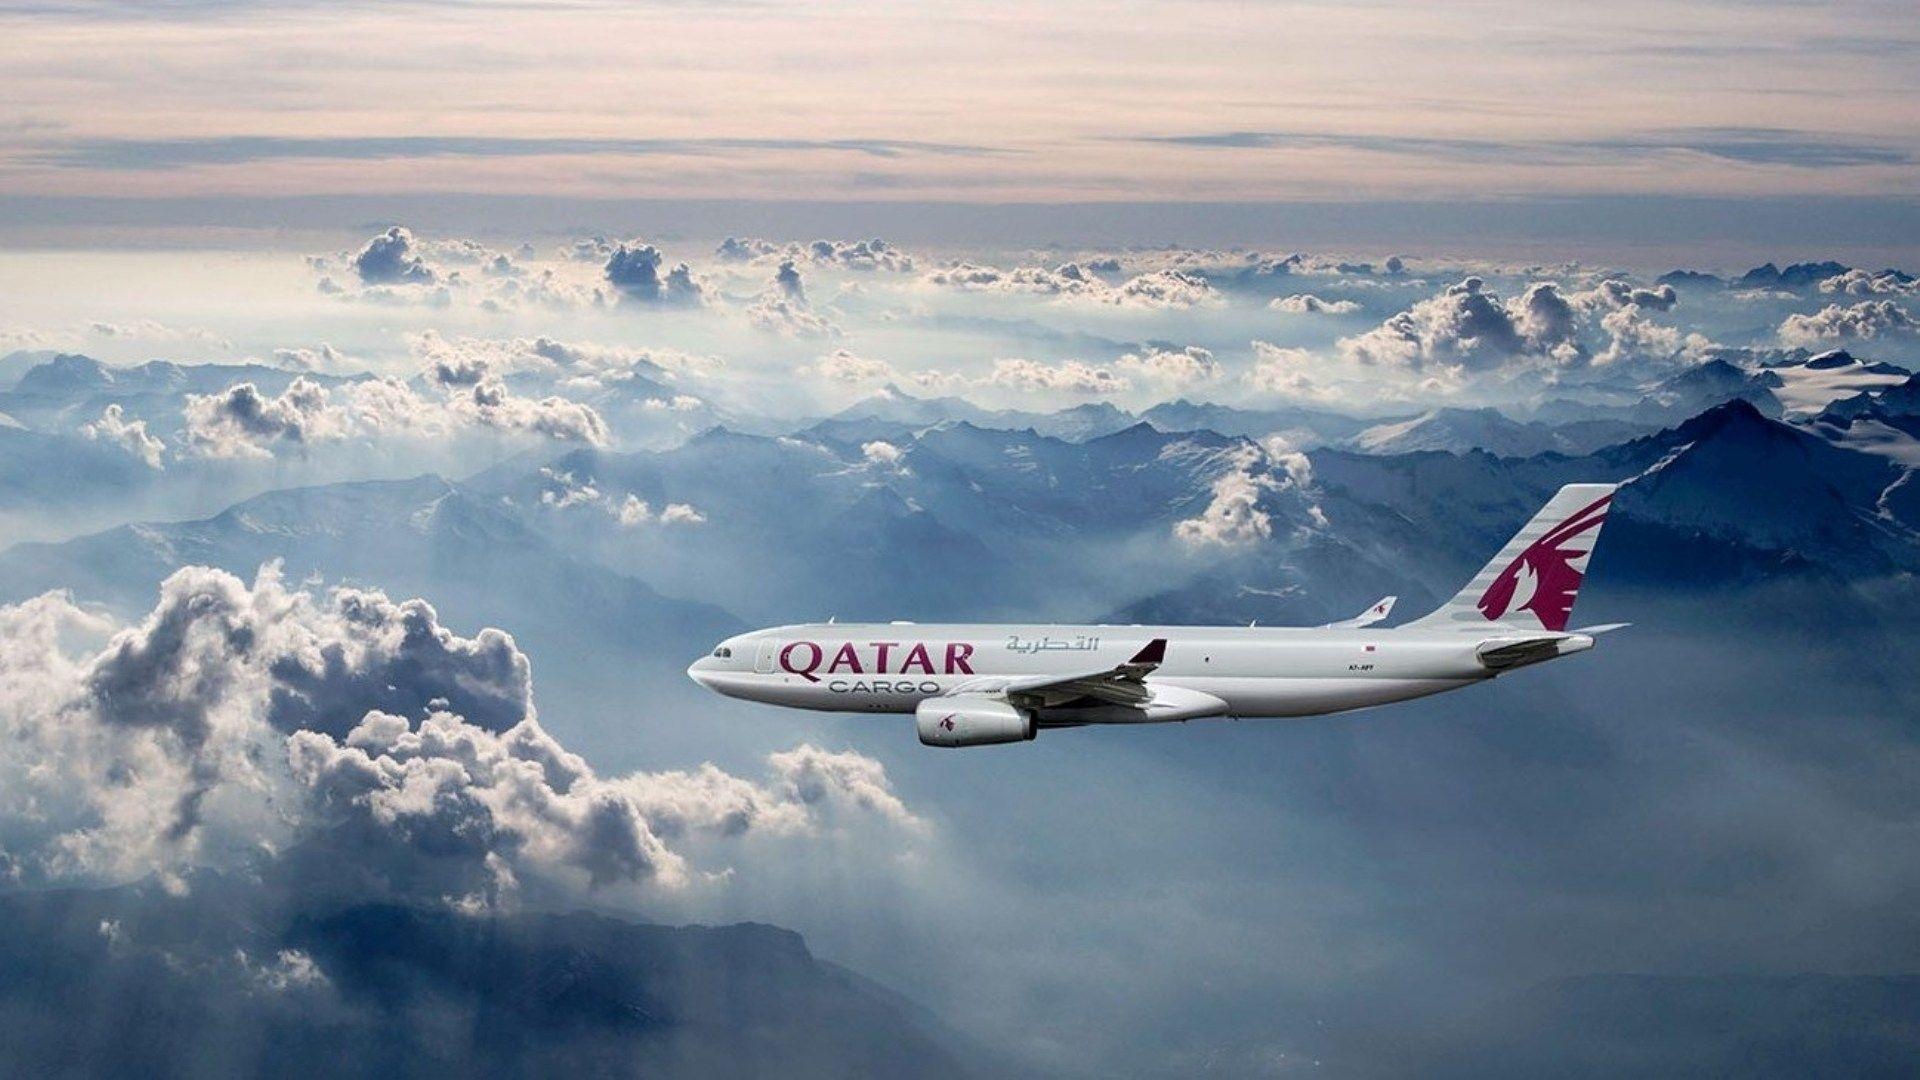 Qatar Airways, Airline travel, Luxurious cabins, International destinations, 1920x1080 Full HD Desktop